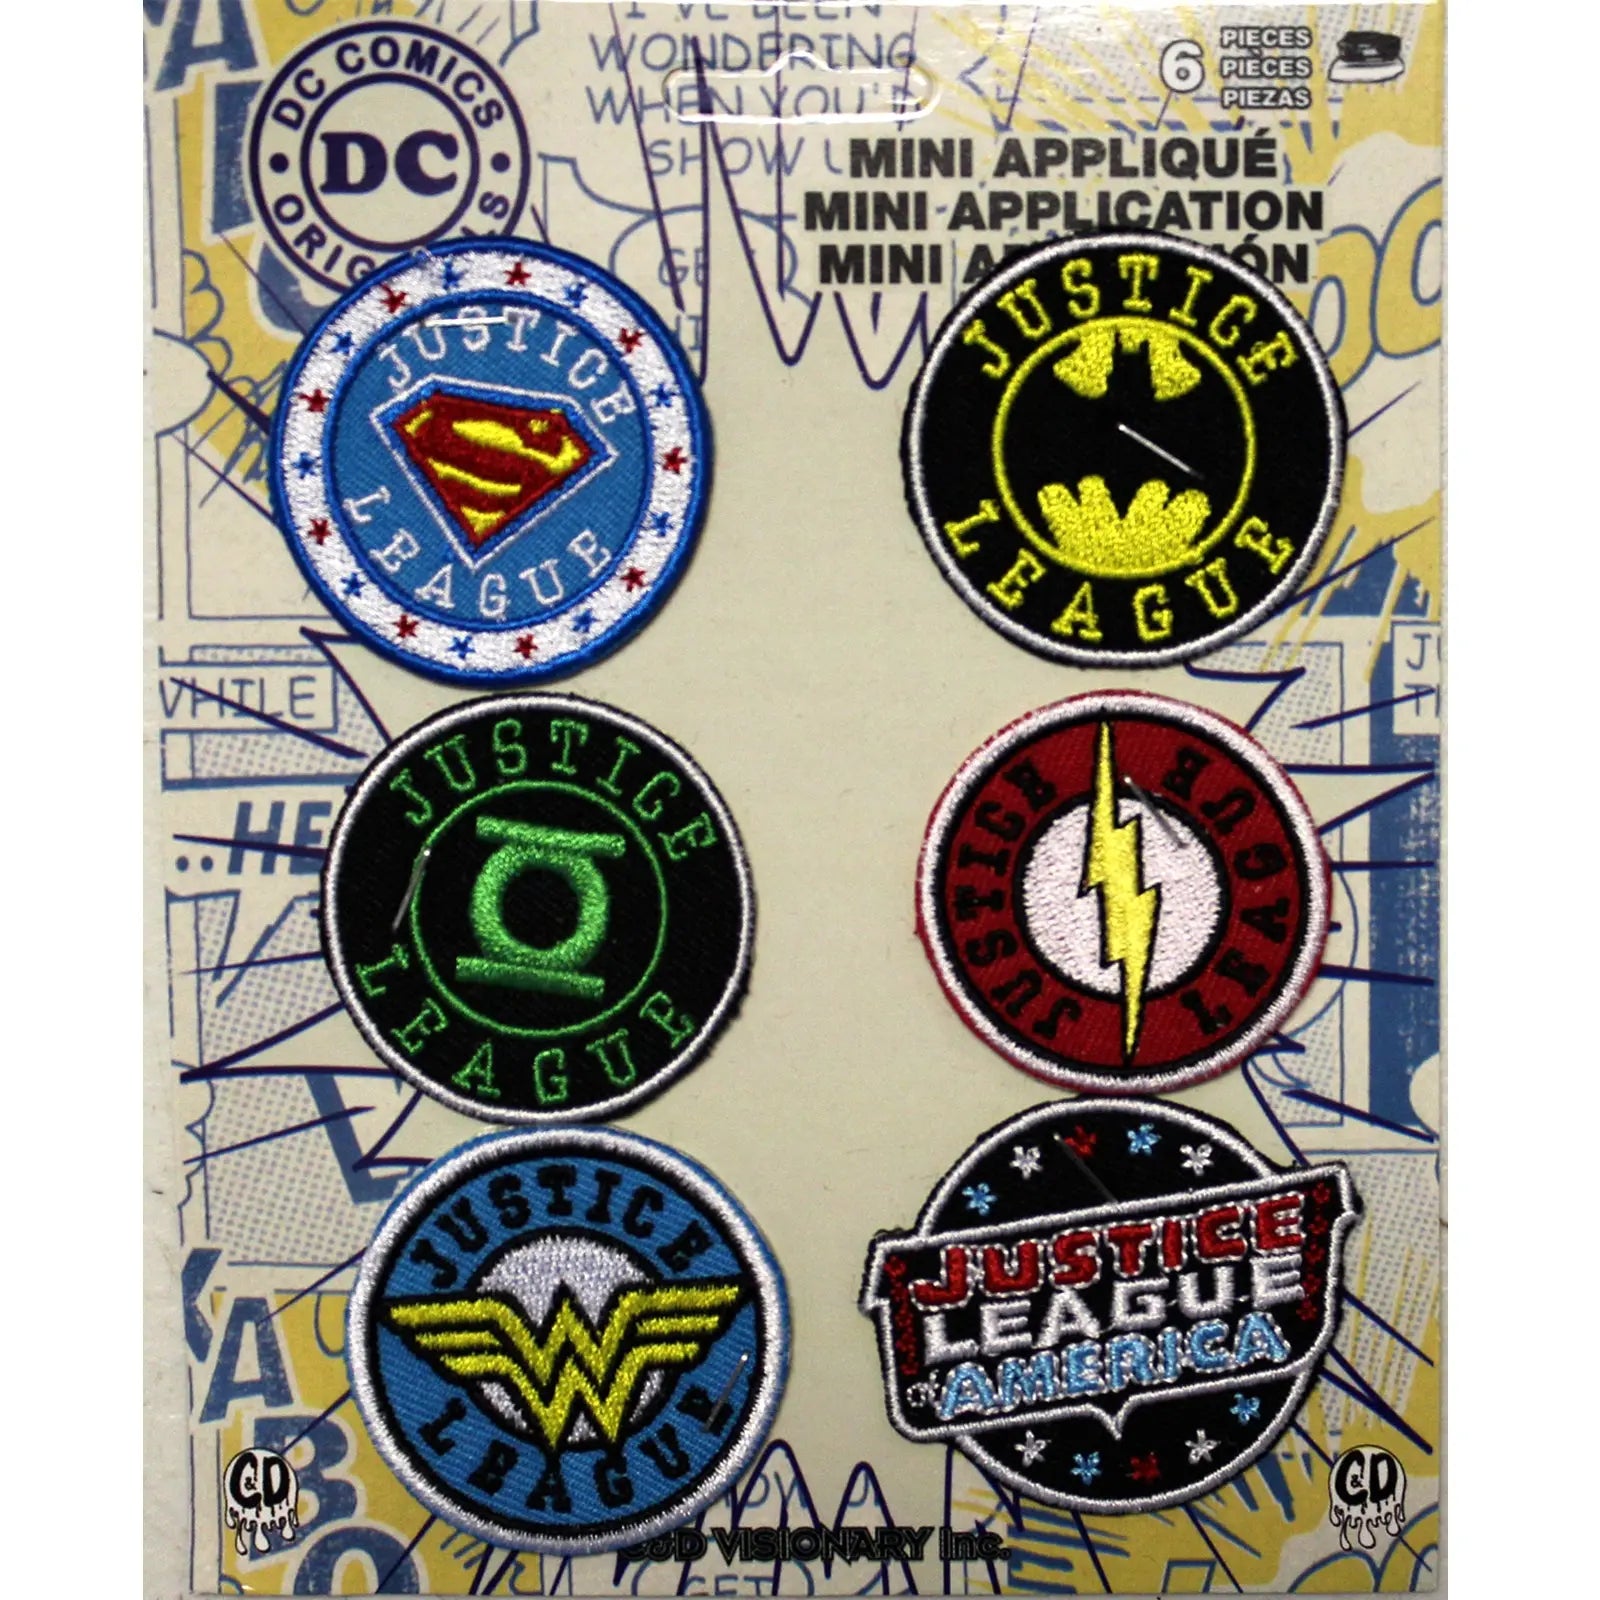 DC Comics Justice League Superhero Logos Iron on Patch 